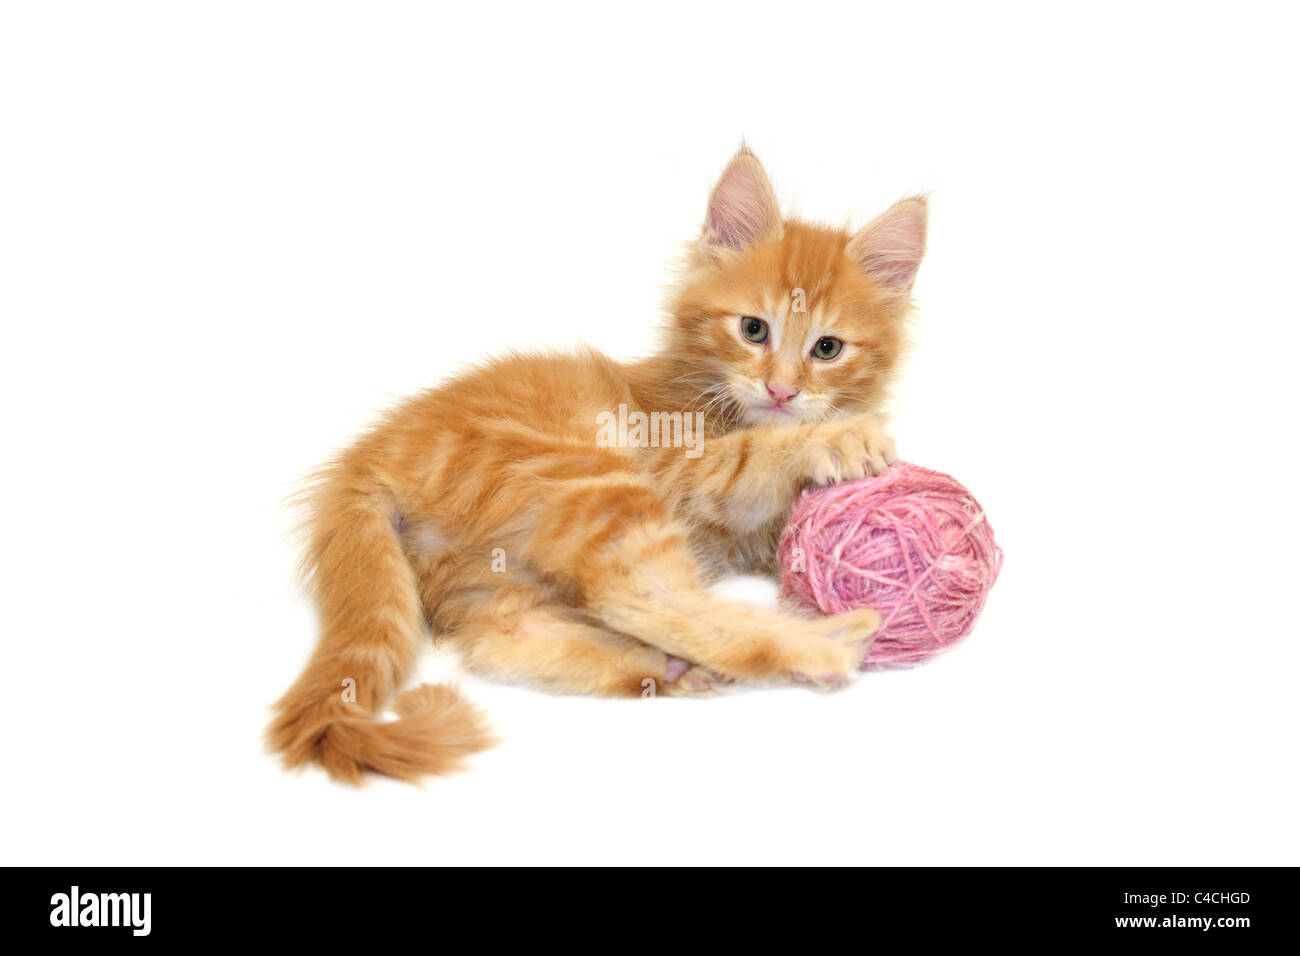 Cute kitten rouge avec la laine rose ball against white background Banque D'Images